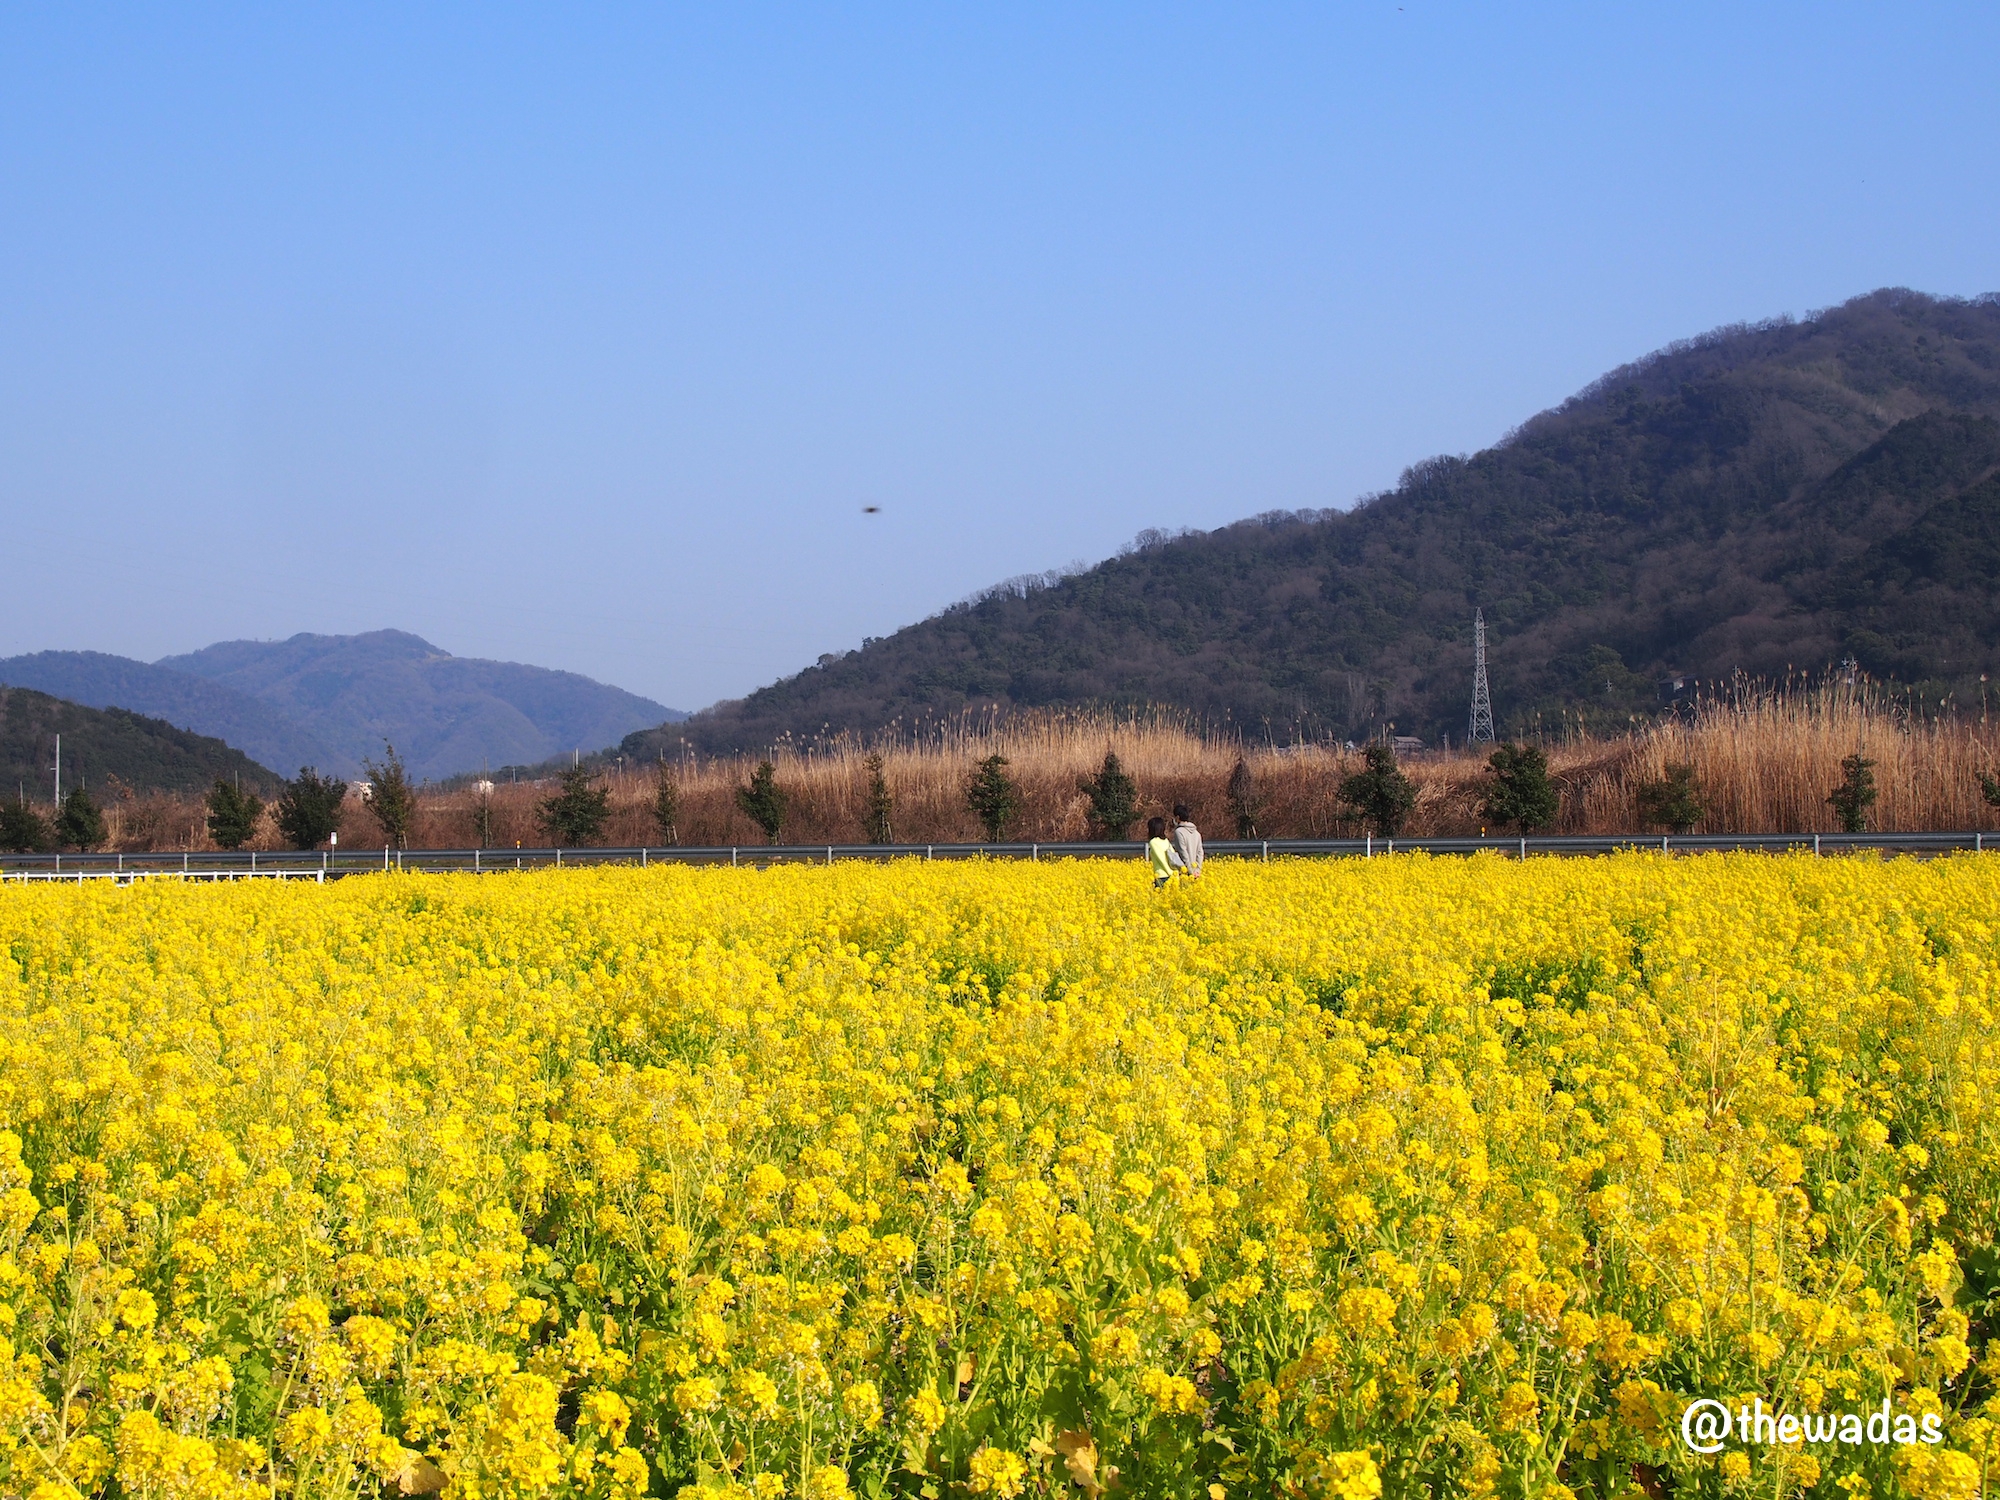 Kasaoka Bayfarm: Nanohana rapeseed flower field, couple